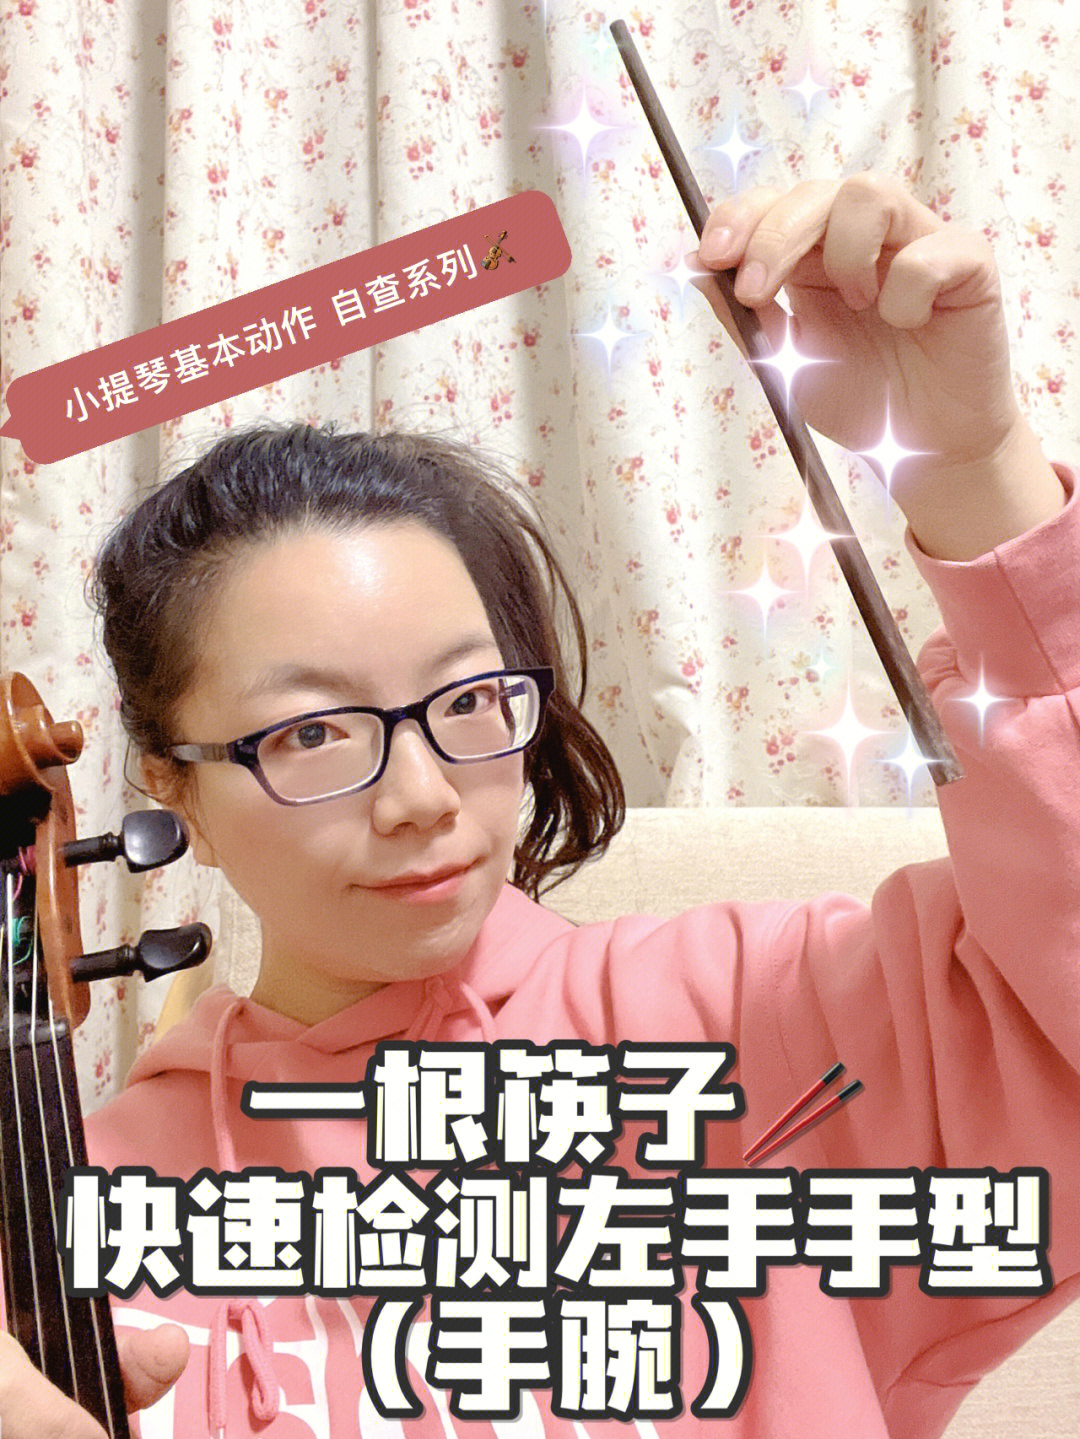 一根筷子检查小提琴的左手手腕动作